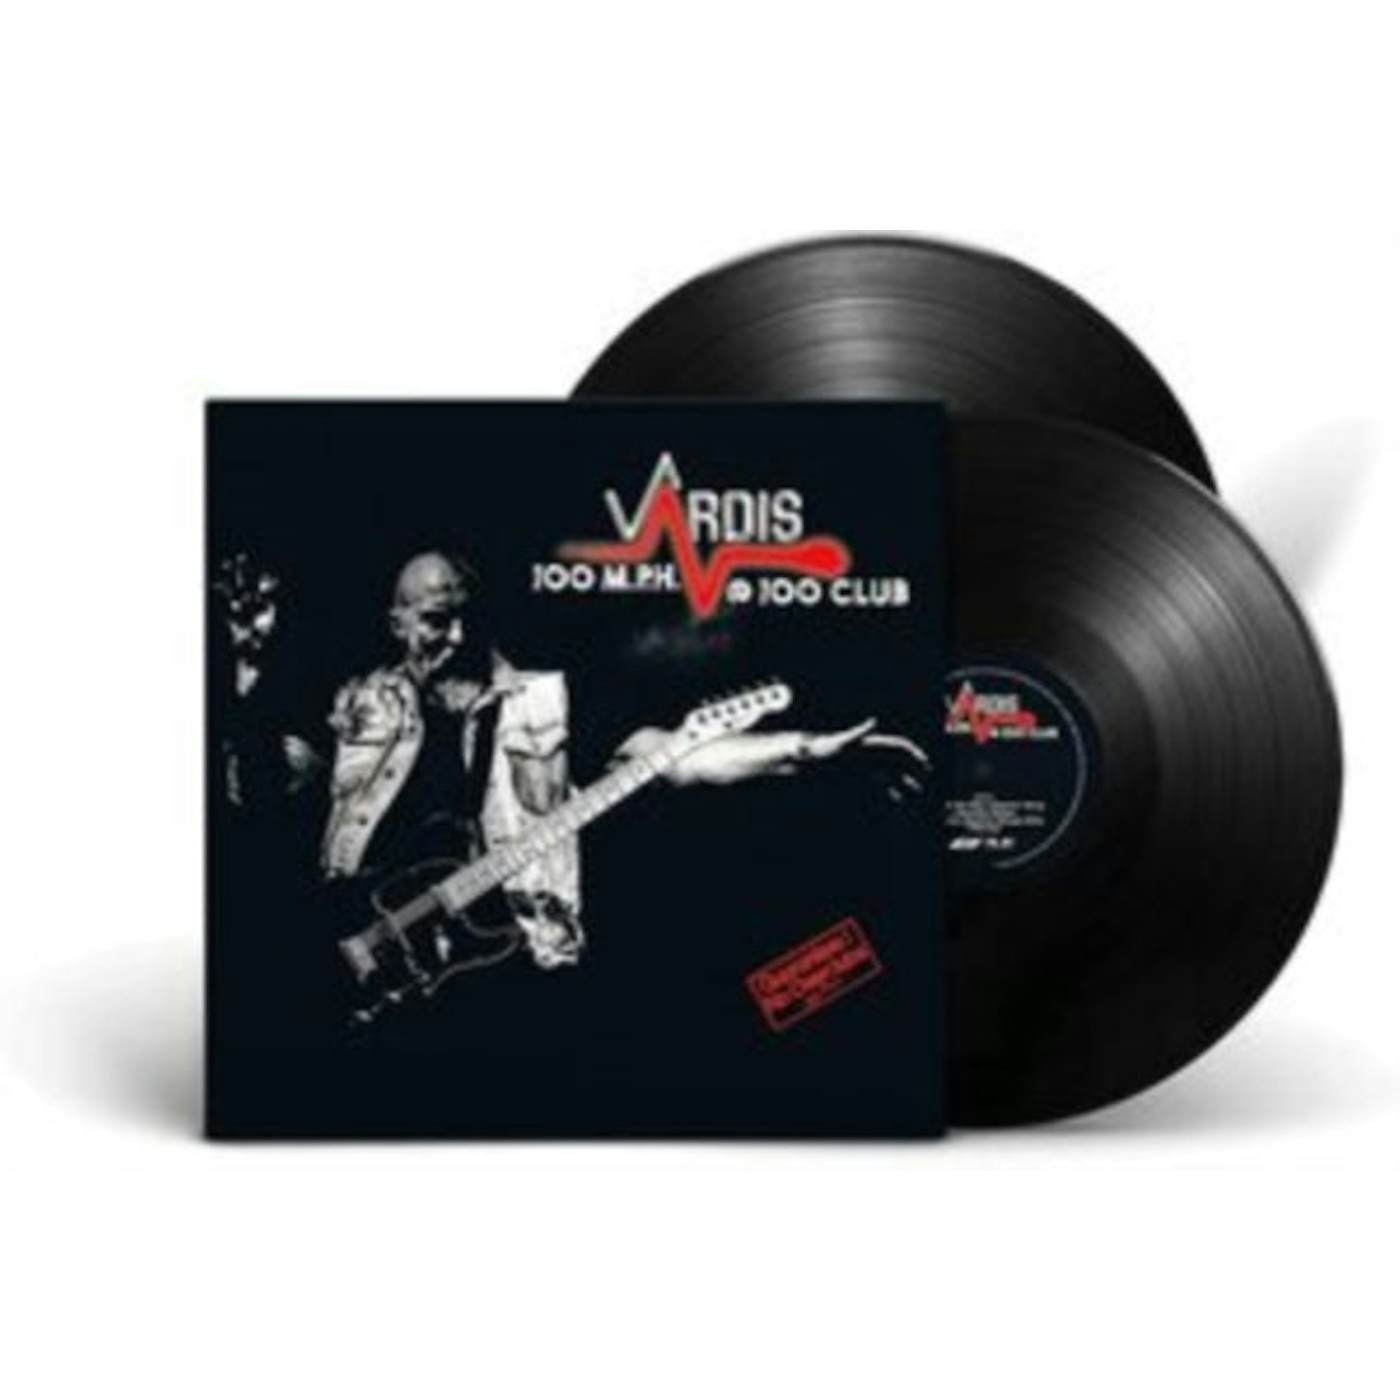 Vardis LP - 100m.P.H.@100club (2lp) (Vinyl)